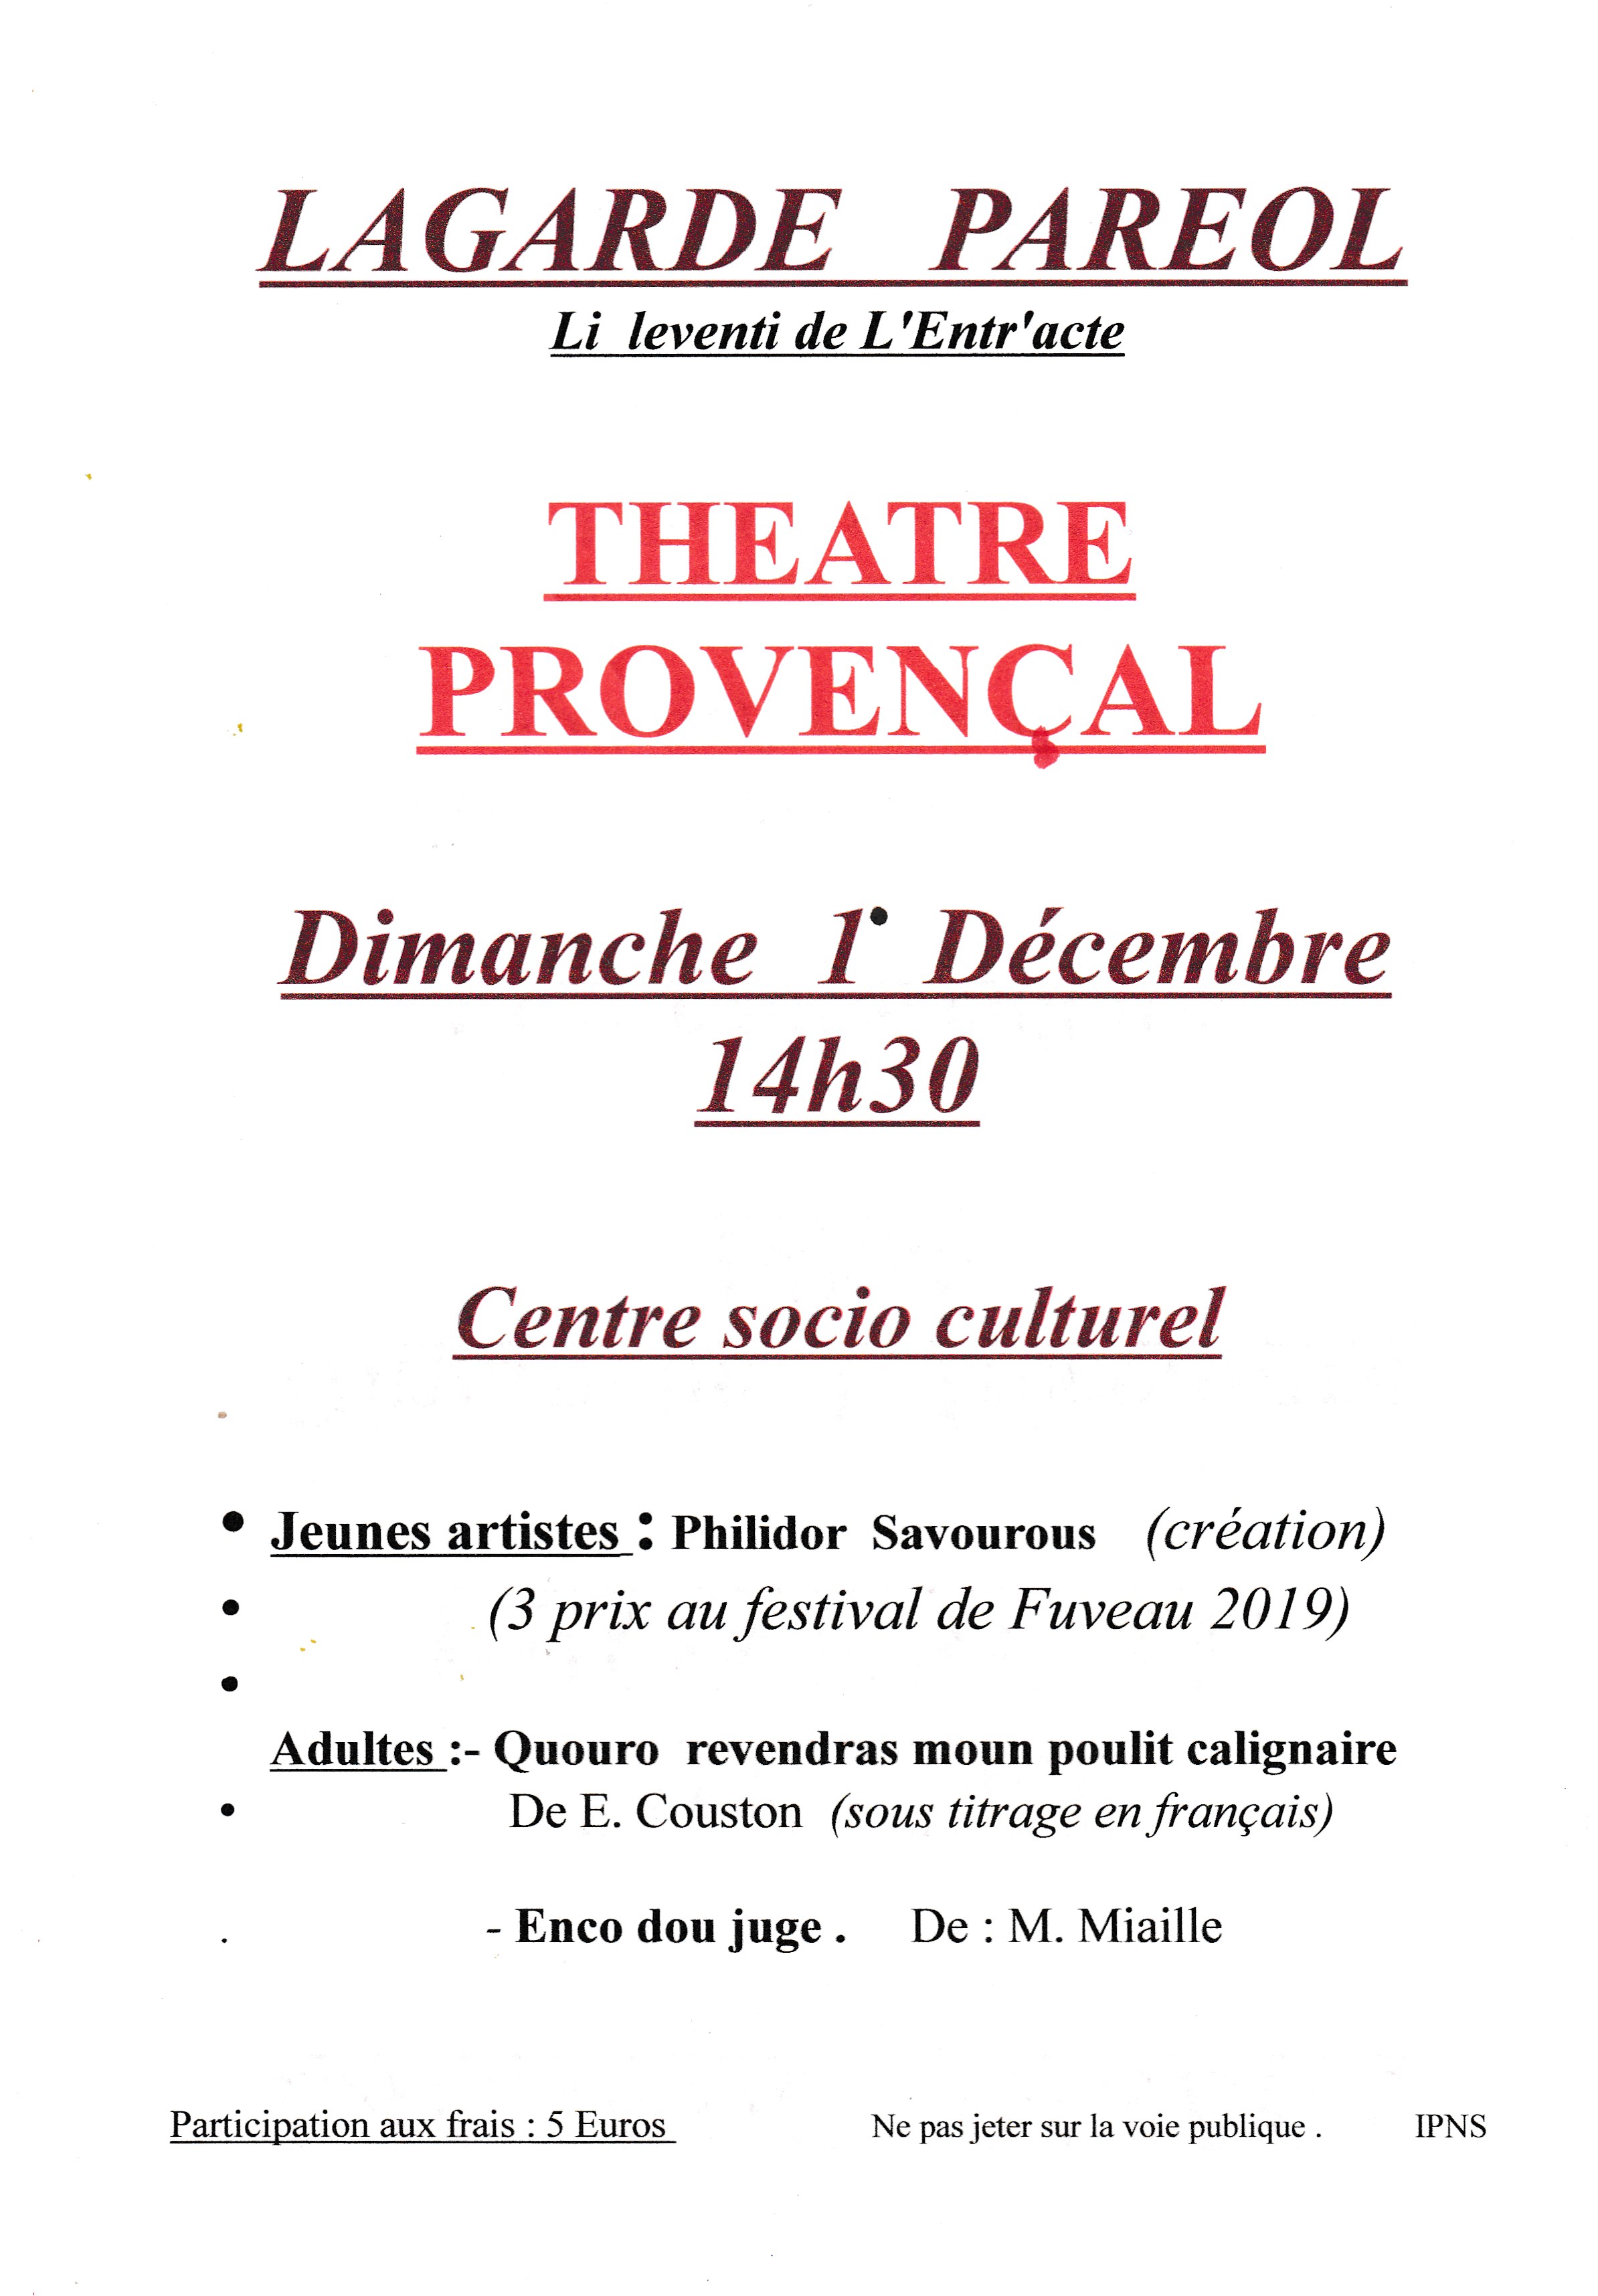 Theatre provencal decembre 2019